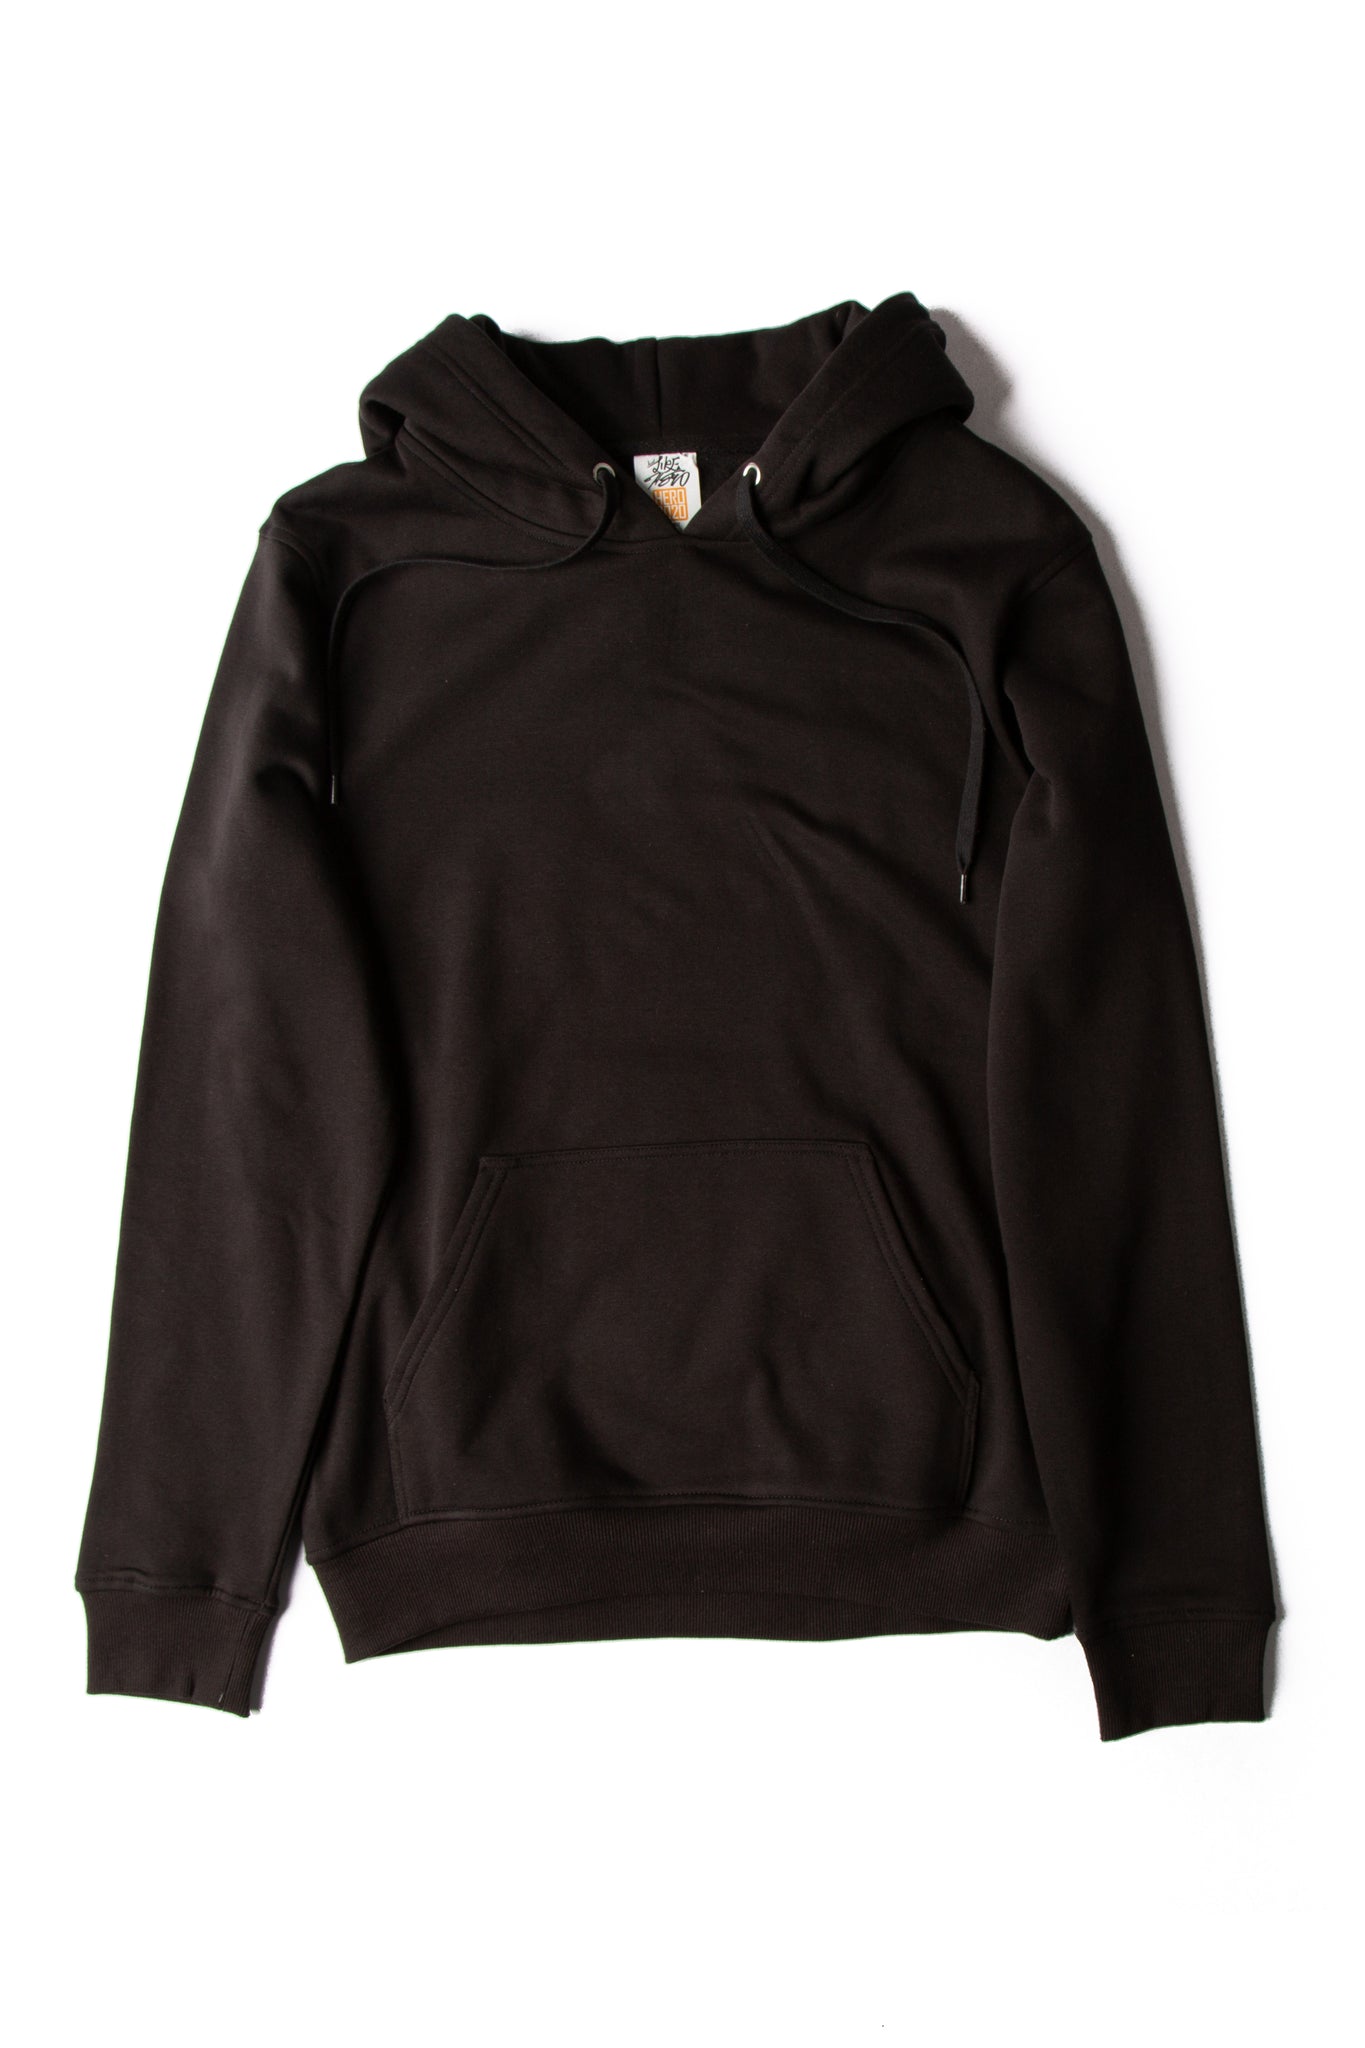 Wholesale Blank Hoodies Sweatshirts Apparel In Canada | Free